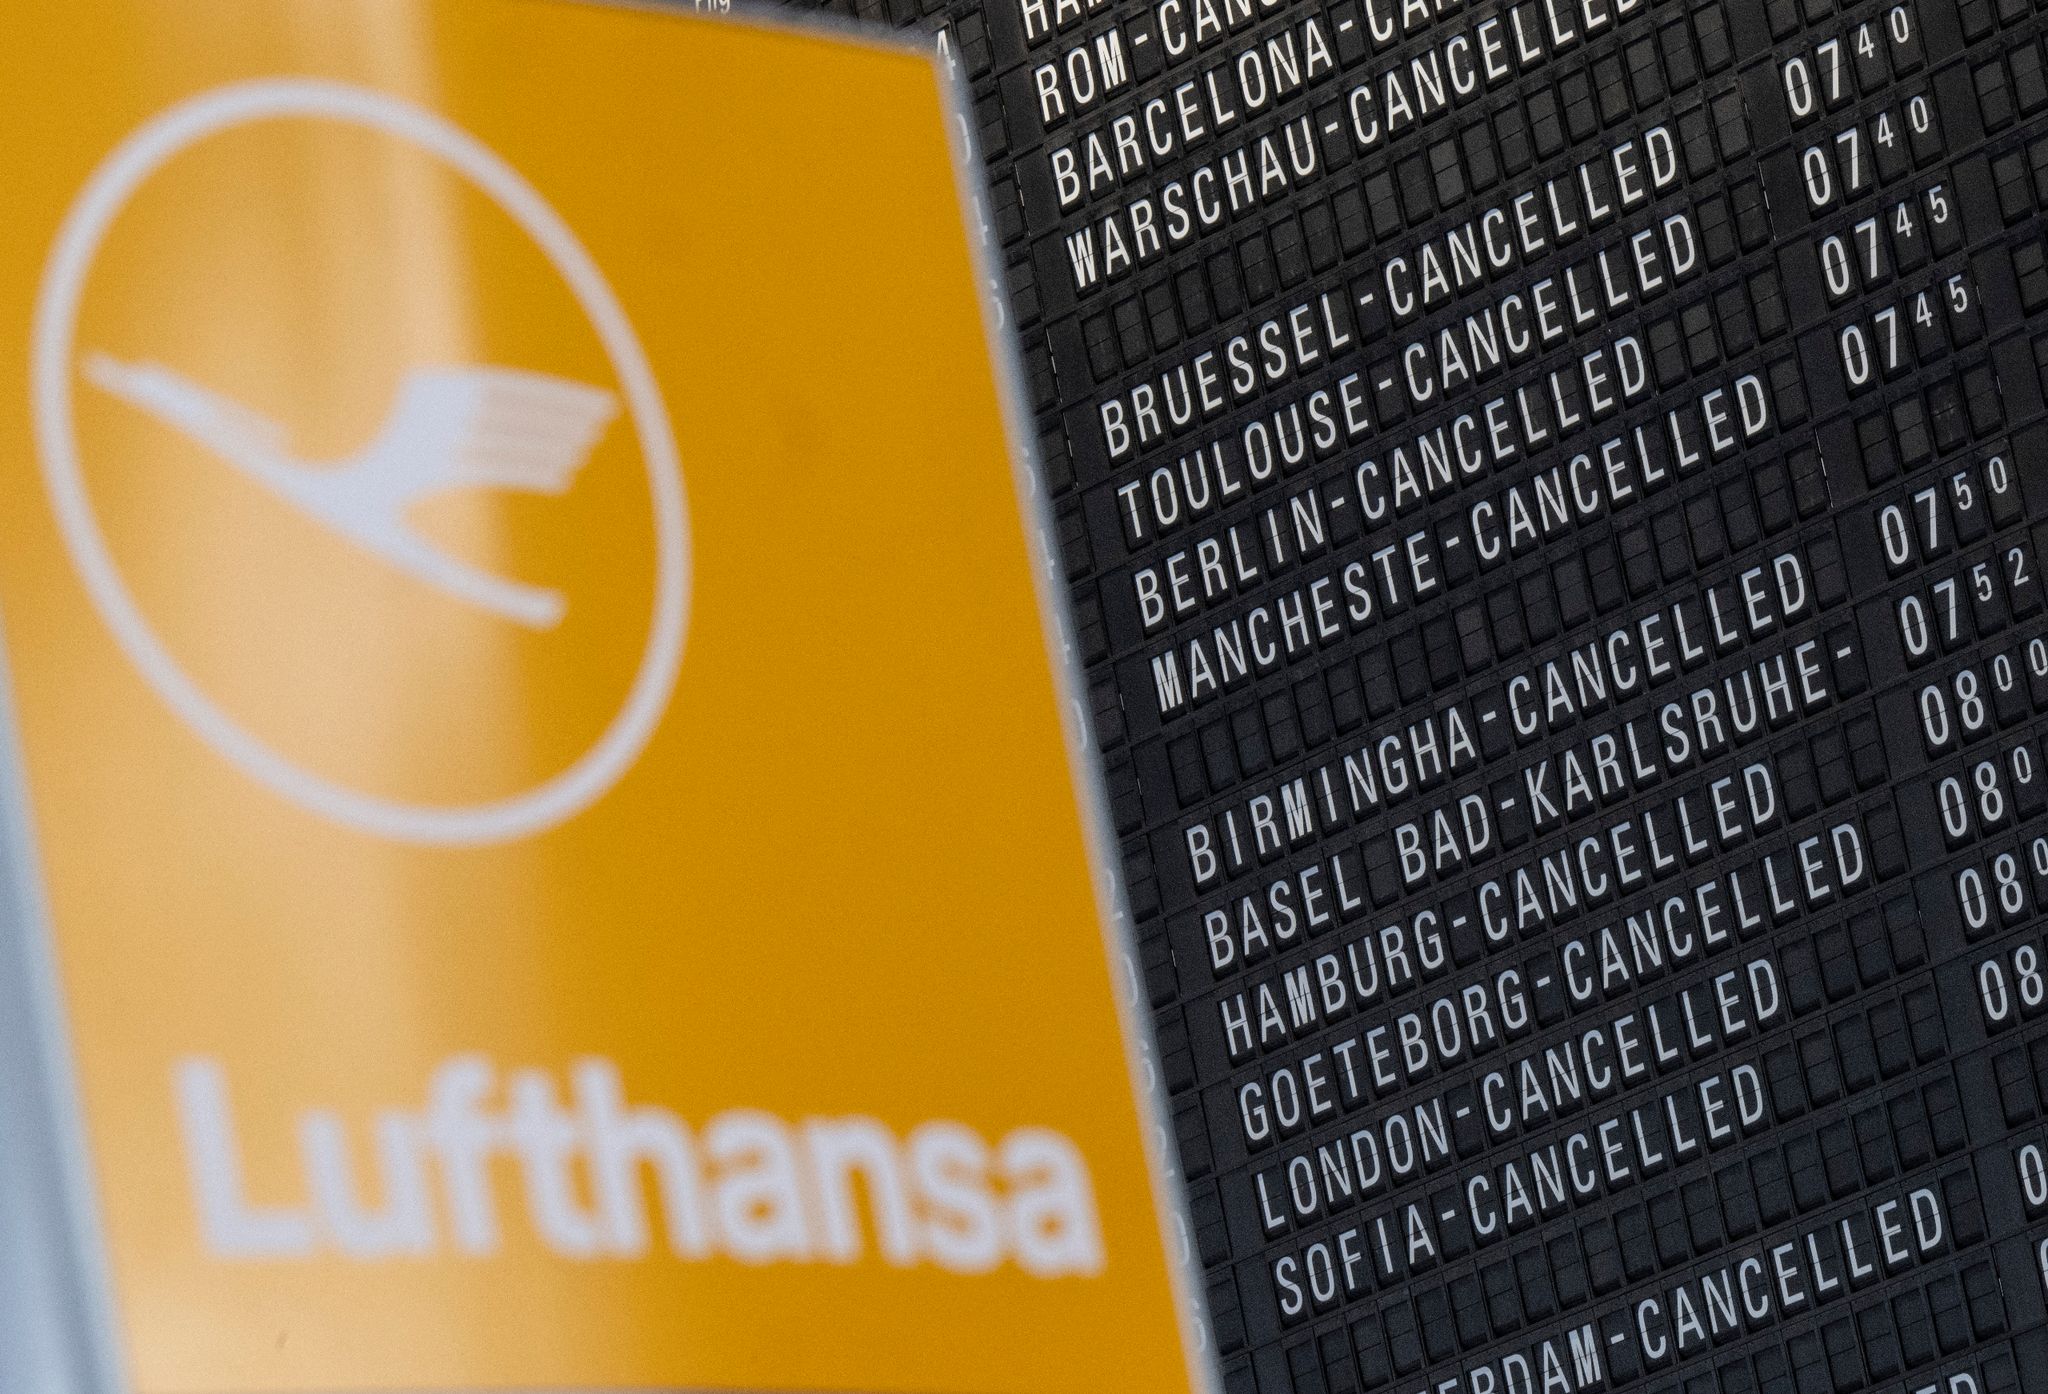 Piloten und Lufthansa einigen sich